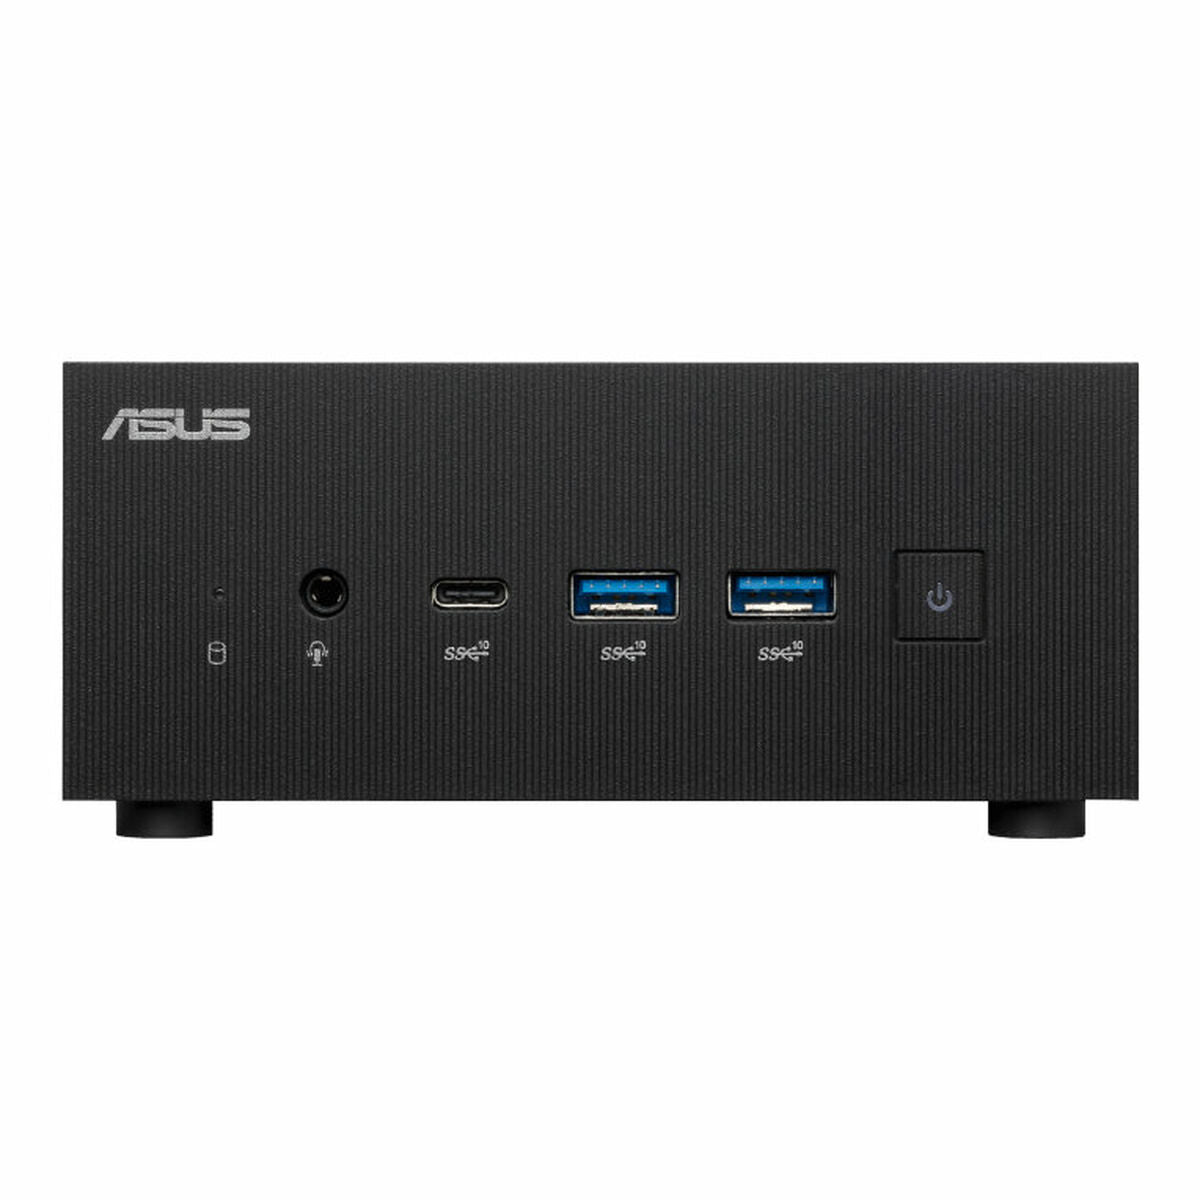 Mini PC Asus PN64-BB7014MD i7-12700H 8 GB RAM 256 GB SSD